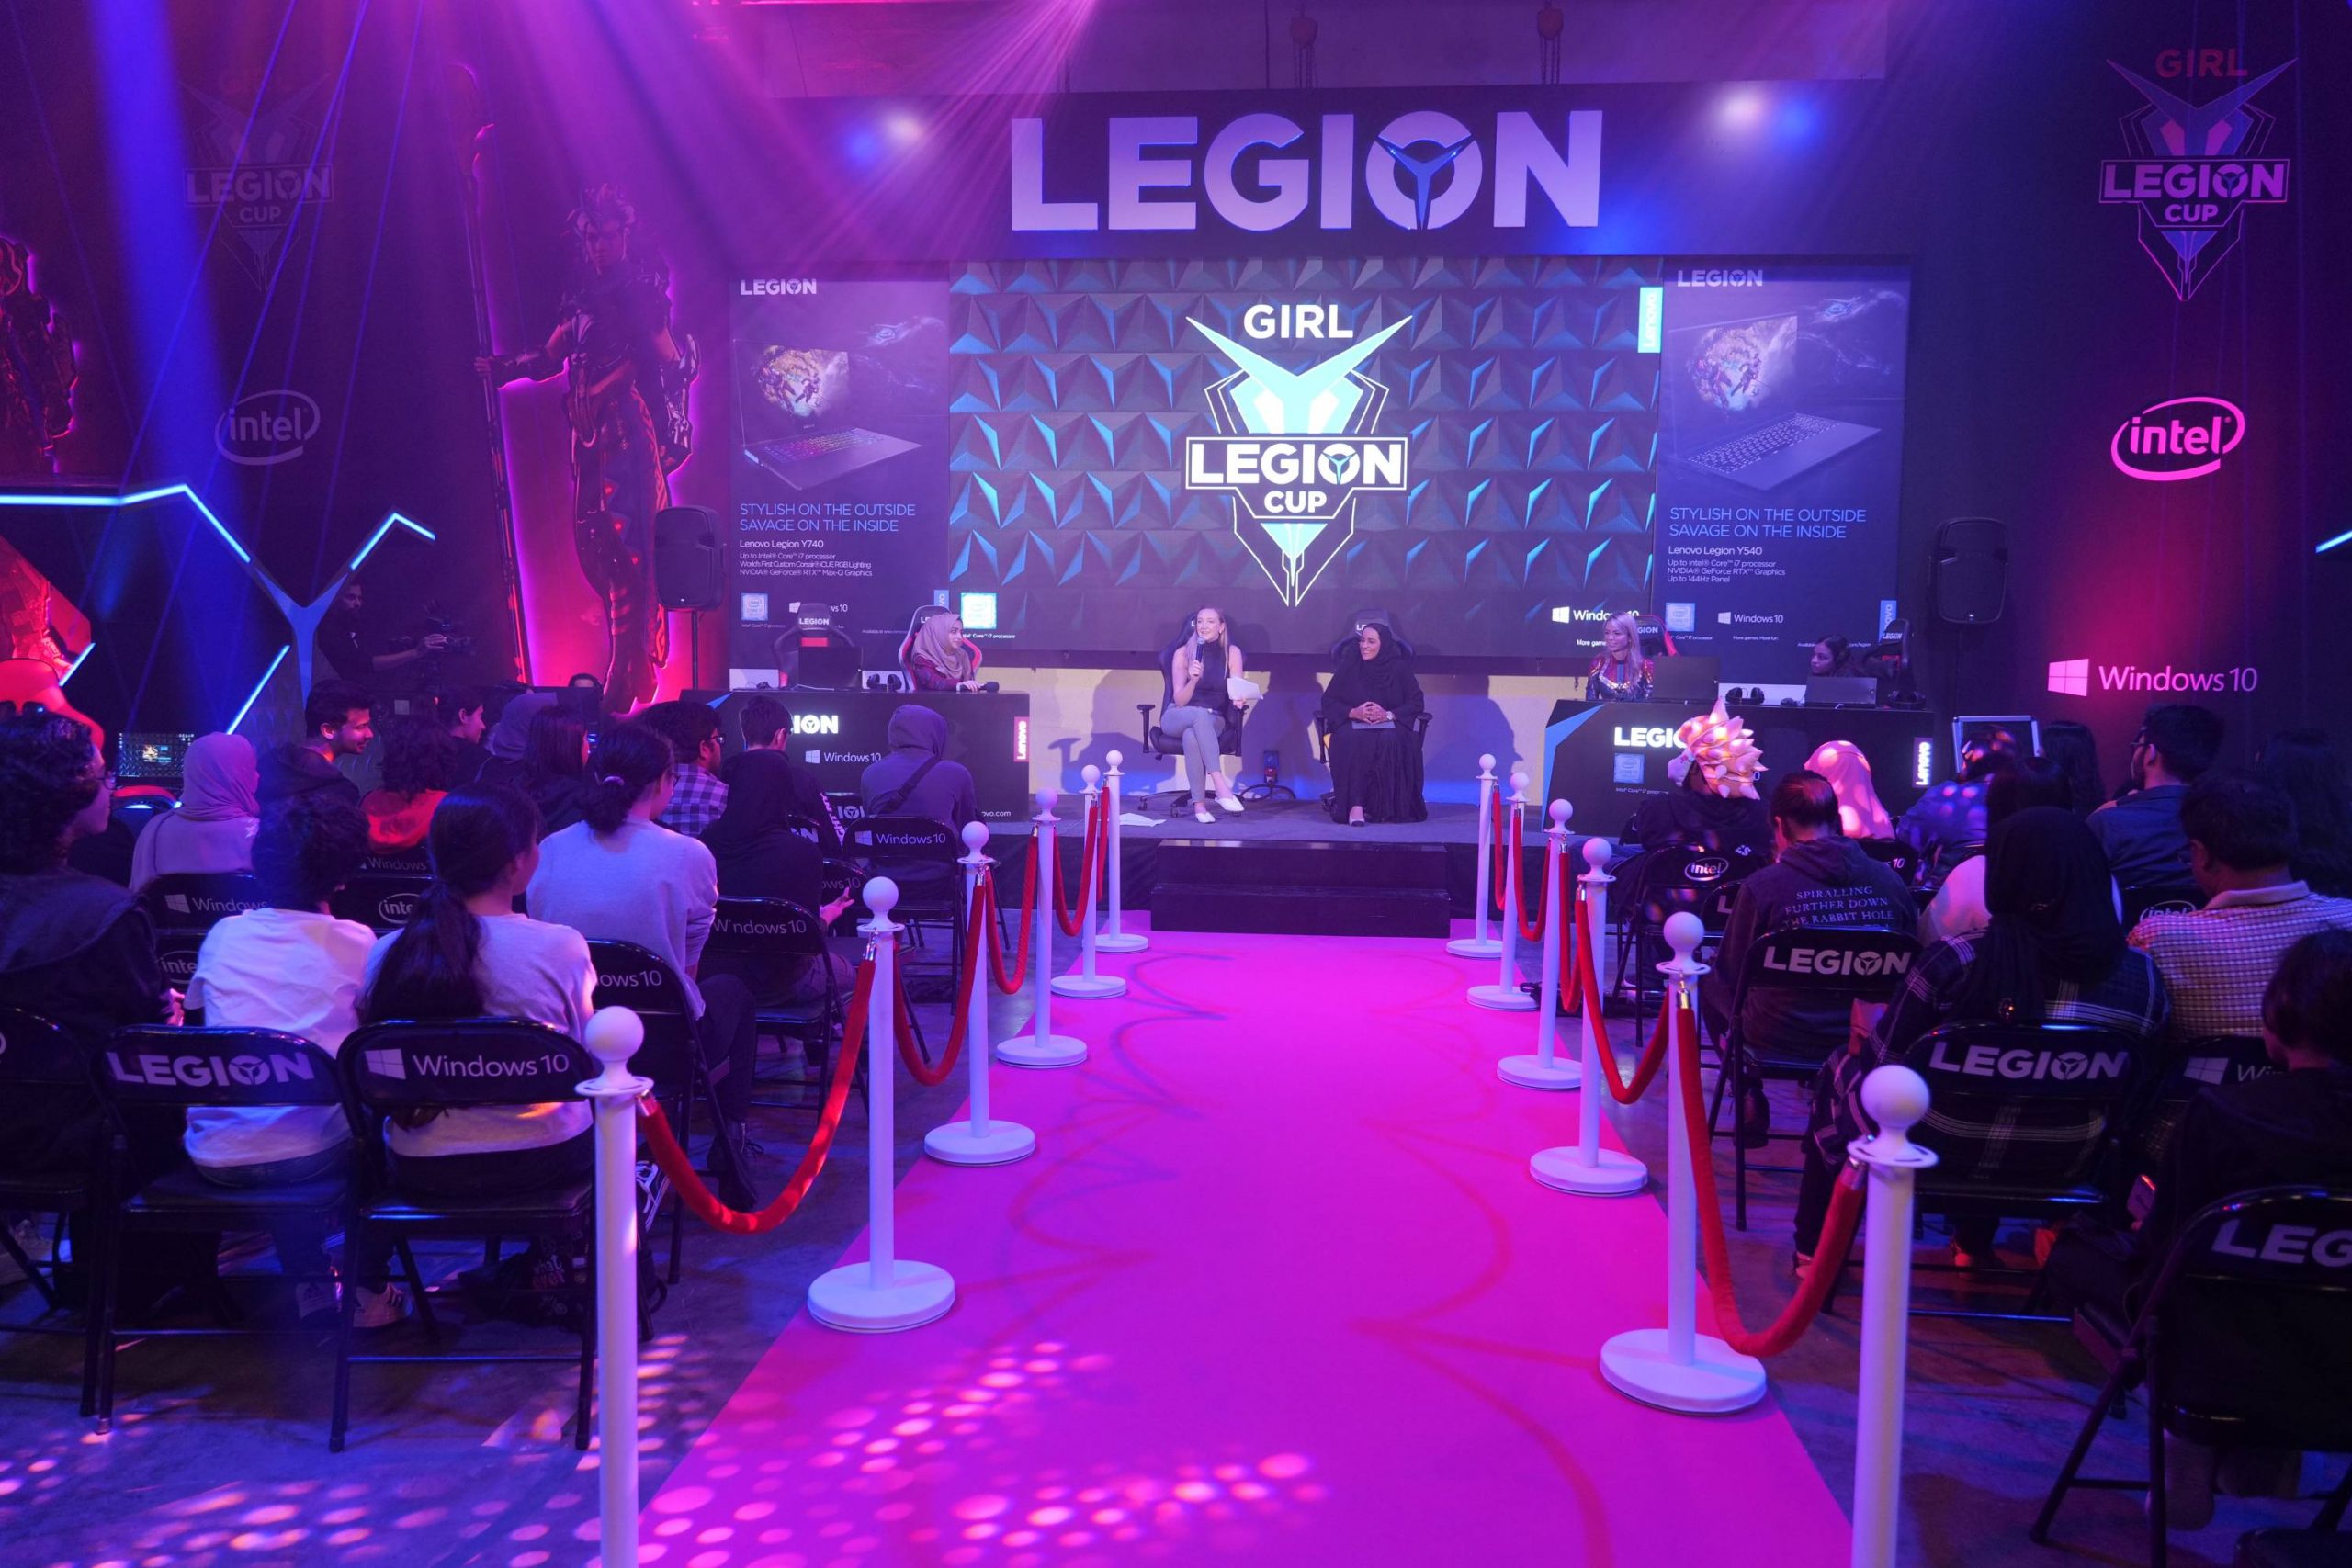 "لينوفو" تستضيف أول بطولة ألعاب إلكترونية خاصة بالإناث في الشرق الأوسط